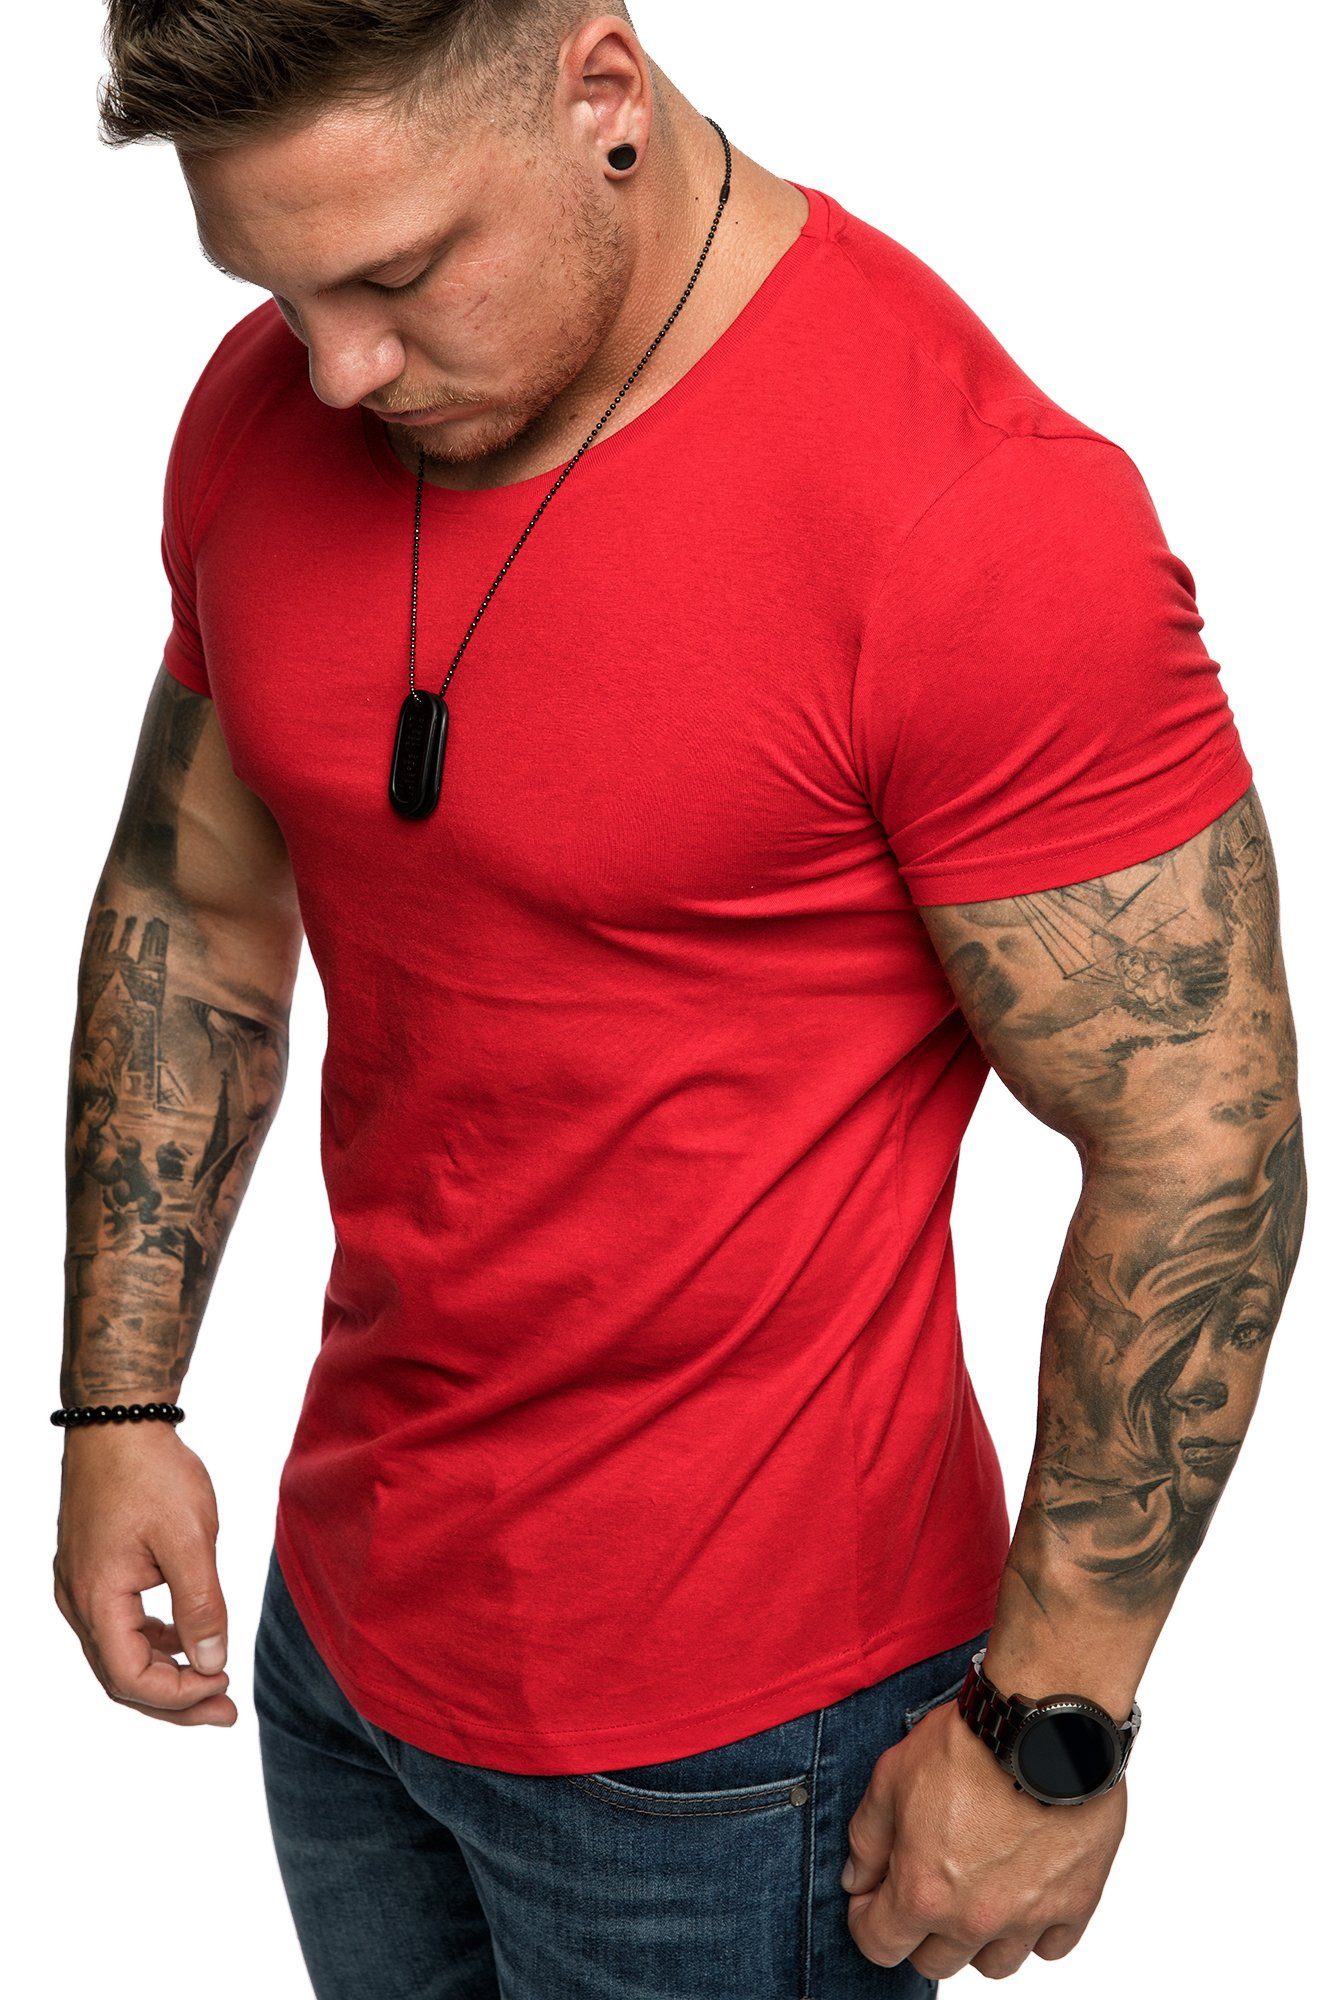 Shop von guter Qualität Amaci&Sons T-Shirt TACOMA Basic T-Shirt Herren Crew Rot Einfarbig Rundhalsausschnitt Vintage mit Rundhalsausschnitt Neck Shirt Basic